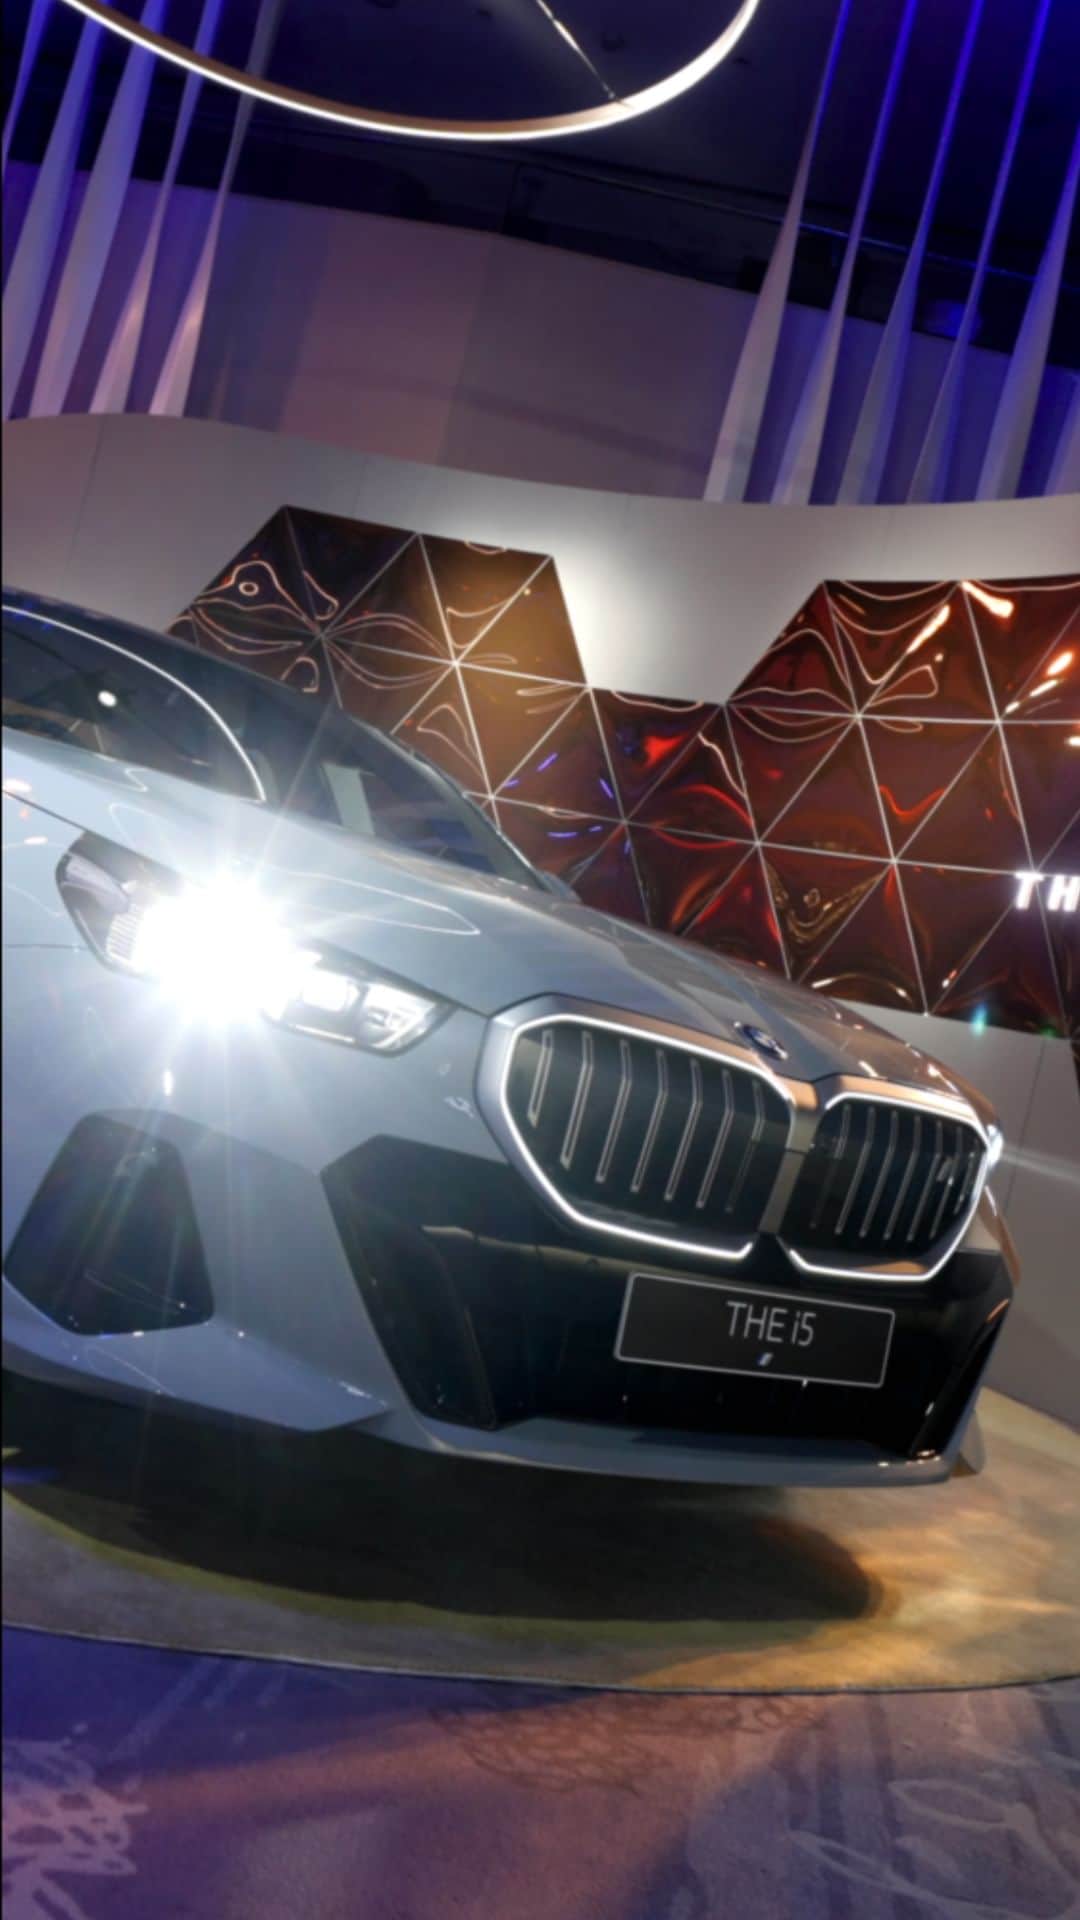 BMW Thailandのインスタグラム：「จับตาดูสิ่งใหม่ใน THE FIRST-EVER BMW i5 ลงลึกทุกรายละเอียดใหม่ ที่สร้างความเปลี่ยนแปลงได้เหนือกว่า ทั้งดีไซน์ภายนอกตั้งแต่หัวจรดท้าย ที่โดดเด่นแต่เรียบง่าย รวมถึงพาร์ทไฮไลต์อย่างกระจังหน้า ‘Iconic Glow’ ใหม่ พร้อมสัมผัสกับฟังก์ชันภายในสุดล้ำสมัย ที่จะมอบพลังให้คุณขับเคลื่อนวันหน้าได้เหนือกว่า  พร้อมพบกับคันจริงได้ก่อนใครที่ โรงแรม Park Hyatt Bangkok ตั้งแต่วันนี้-25 ตุลาคมนี้ เท่านั้น  #BMW #BMWTH #JOYisBMW #สุนทรียภาพแห่งการขับขี่ #BMWBEYONDELECTRIC #100PERCENTELECTRIC #THEJOYOFMOVINGFORWARD #THEFIRSTEVERBMWi5」